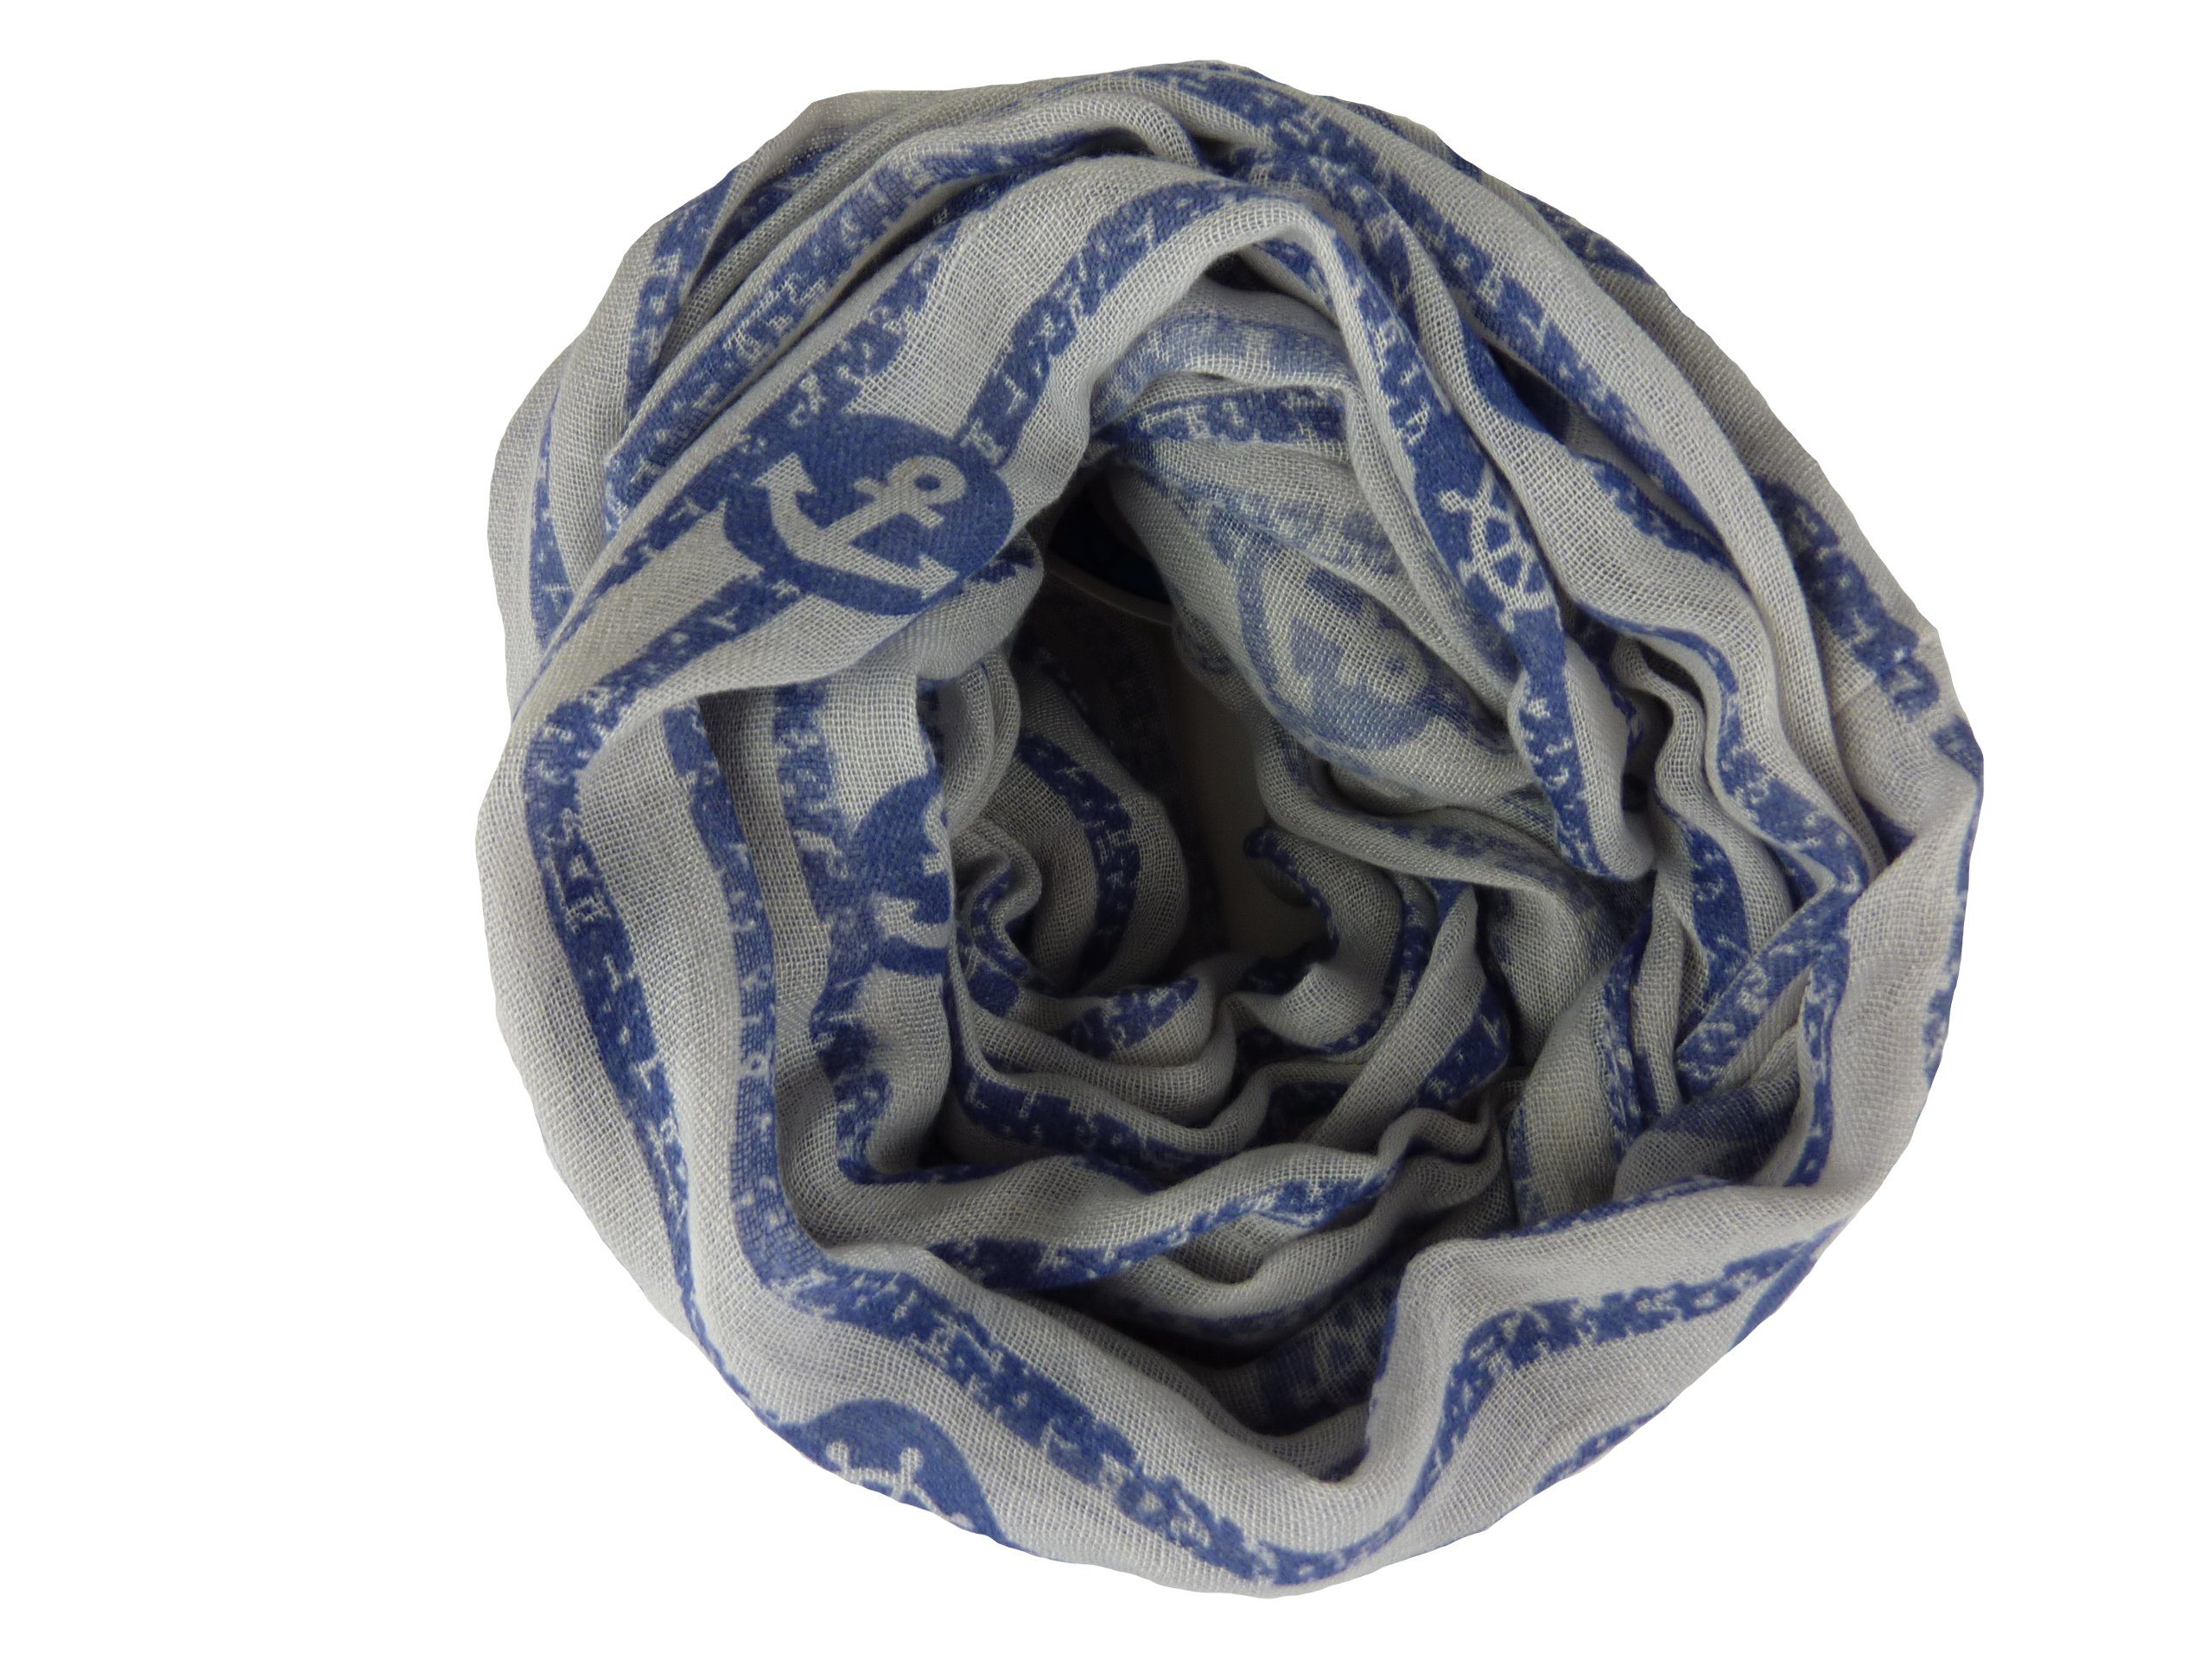 Taschen4life Loop Damen Loop Schal 50% Baumwolle QSWB-52, Anker und Streifen Muster, Schlauchschal grau/blau